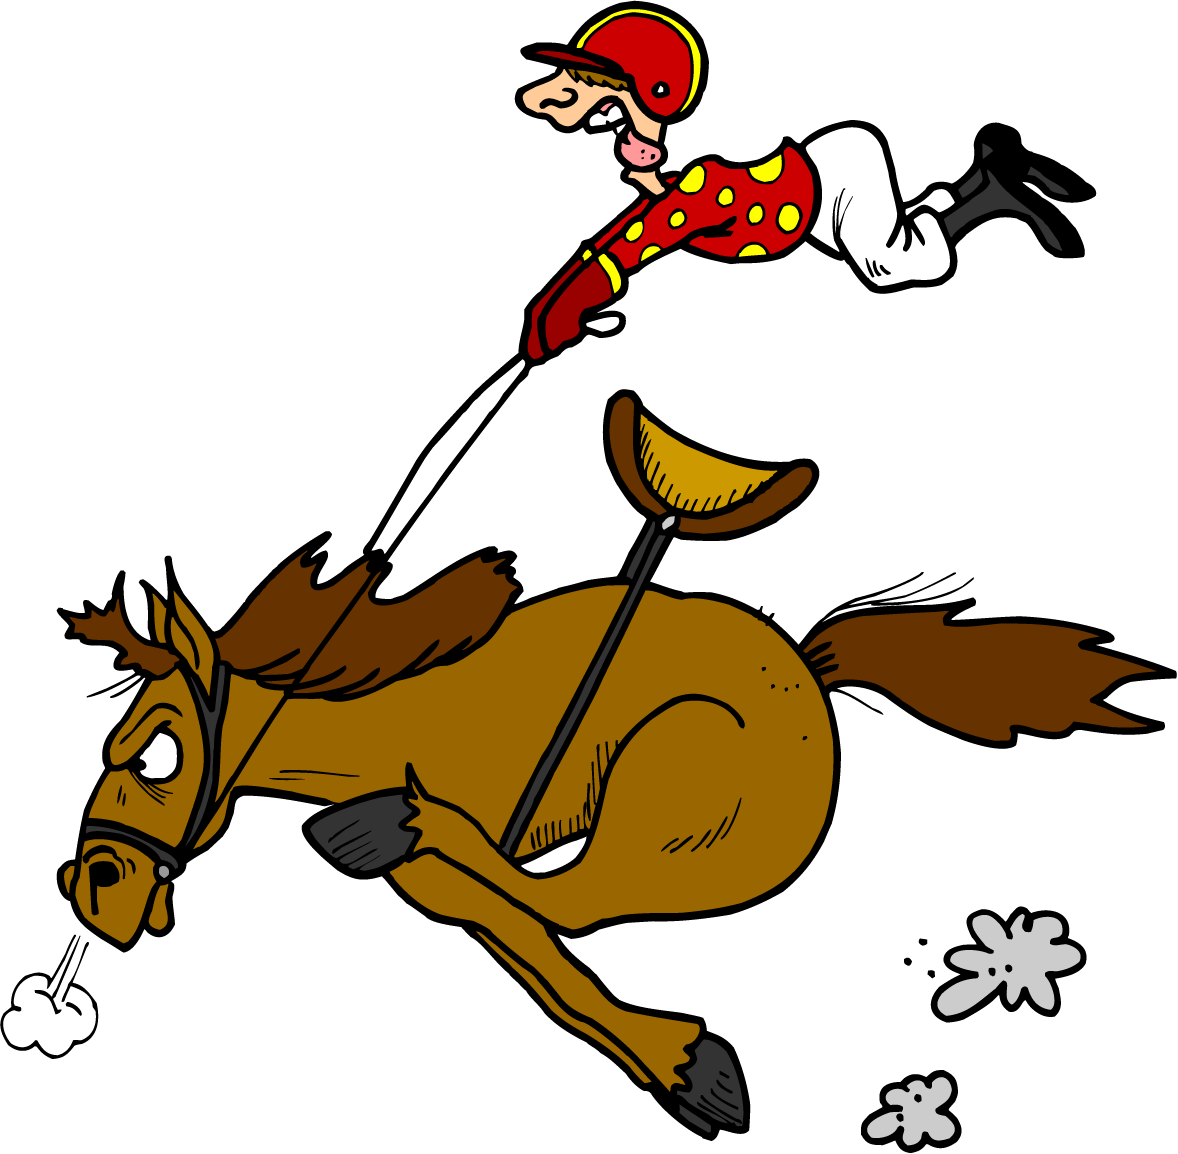 Fobc - Race Night - Cartoon Horse And Jockey (1178x1154)